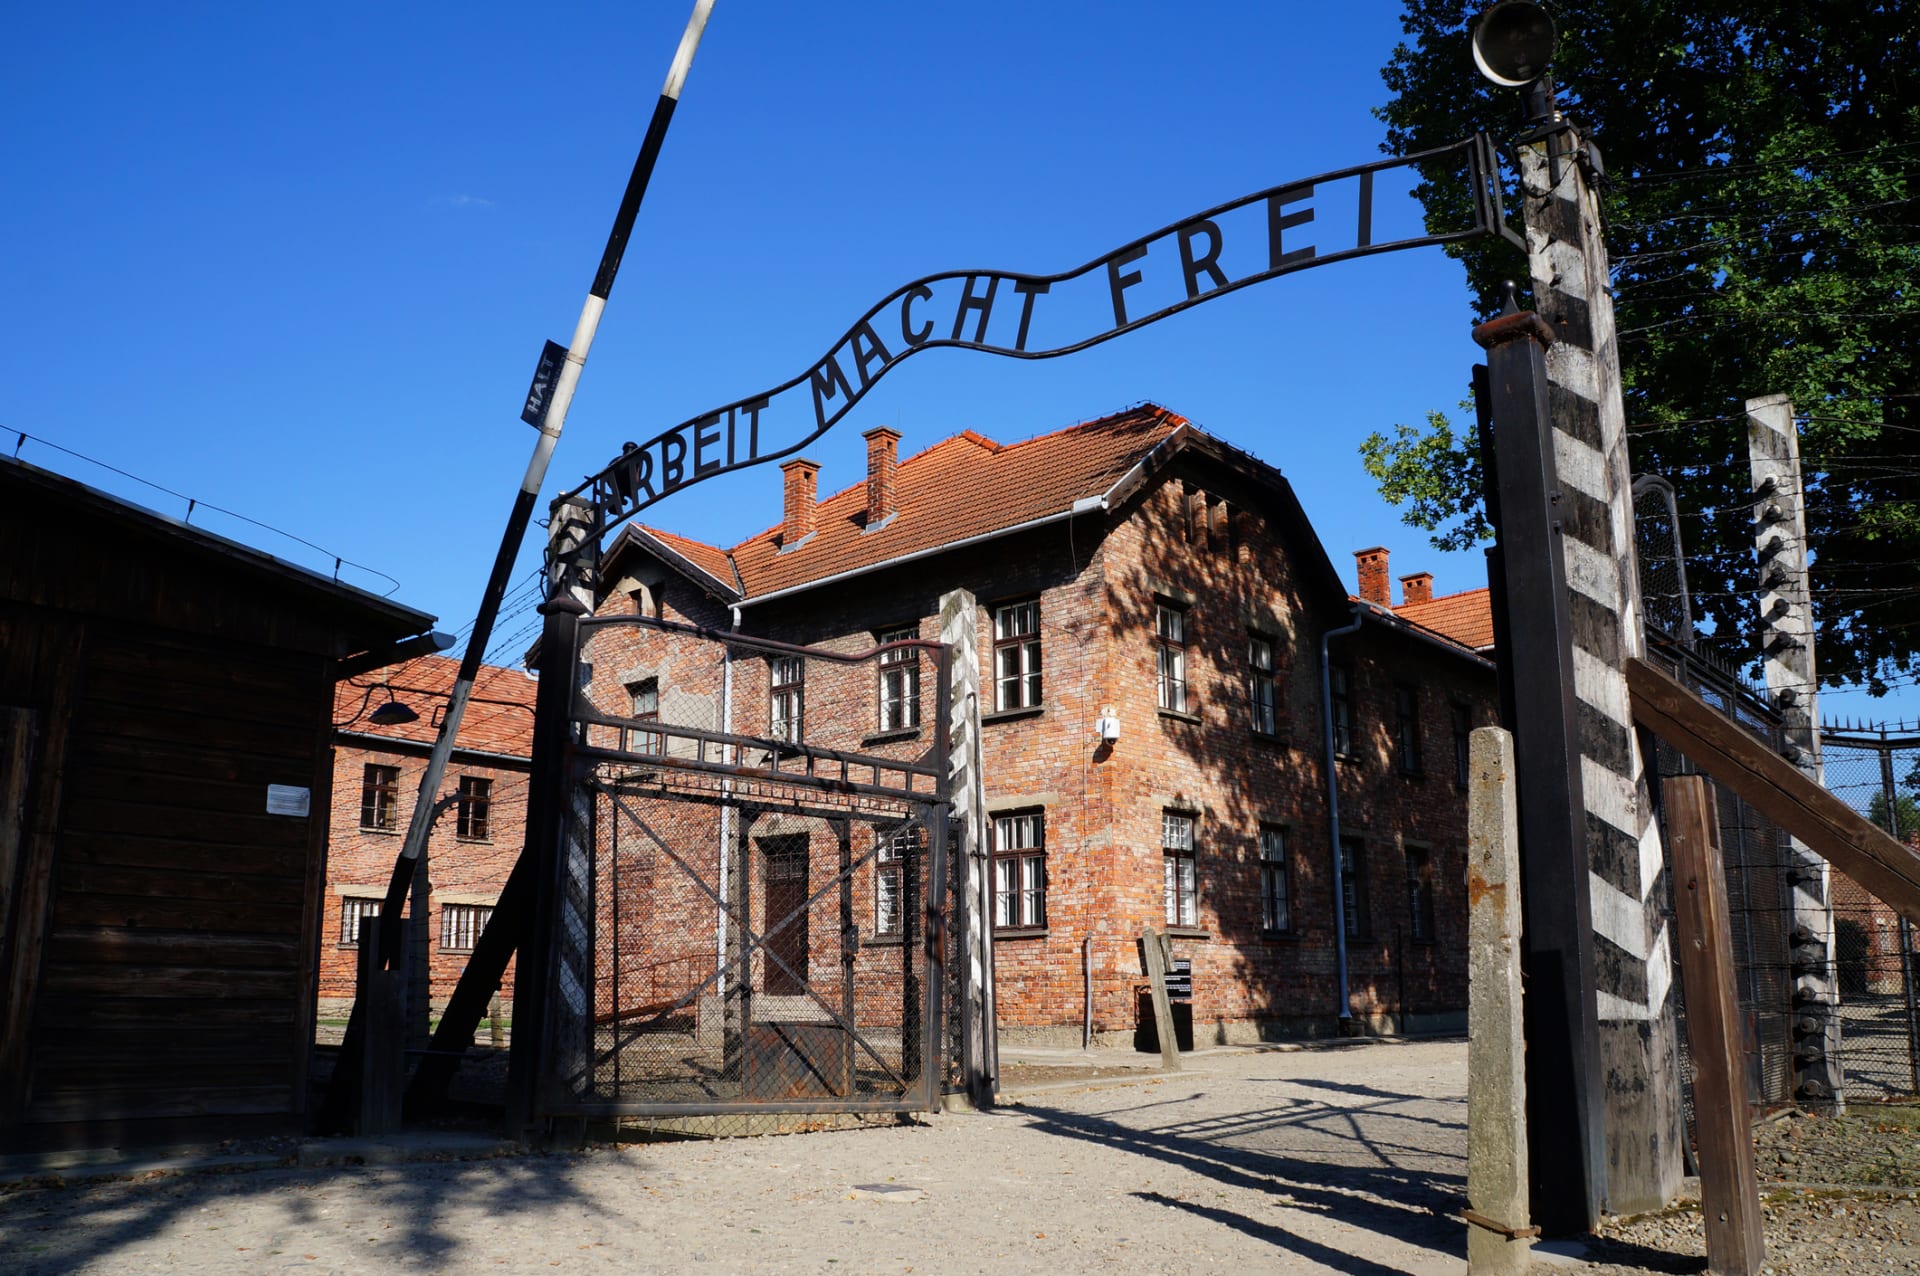 Vznikaly by koncentrační tábory po celém světě?